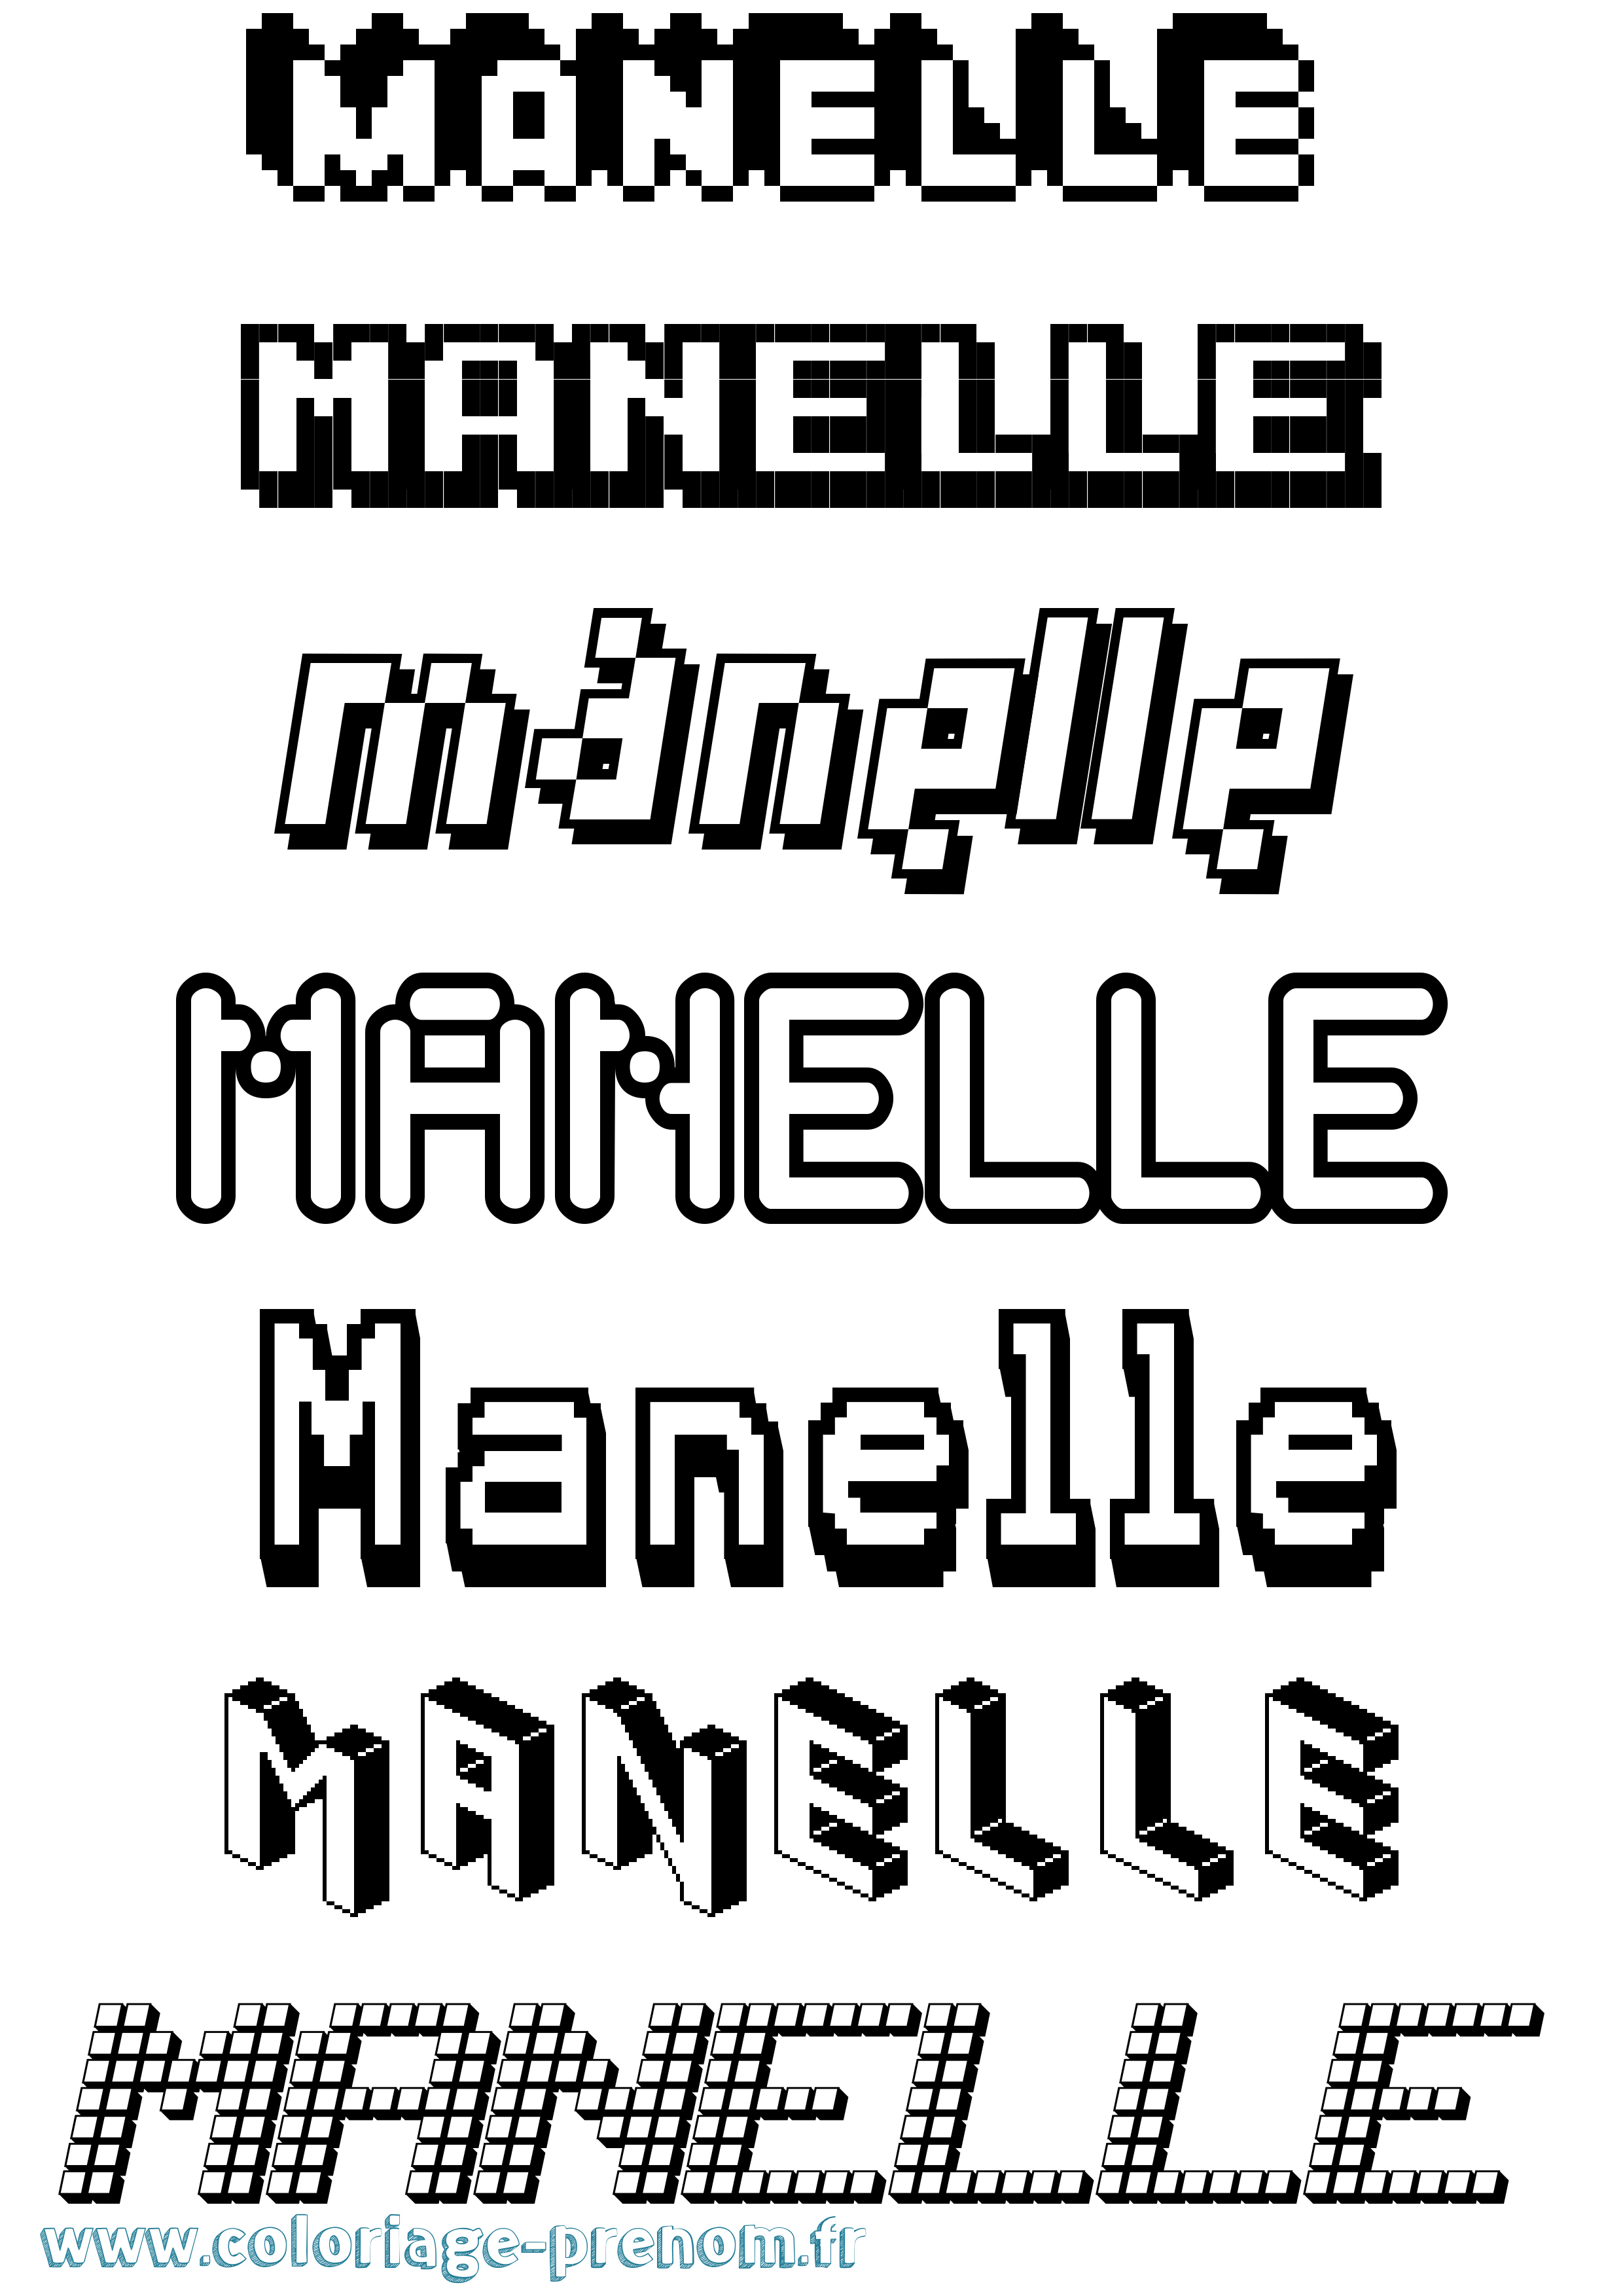 Coloriage prénom Manelle Pixel